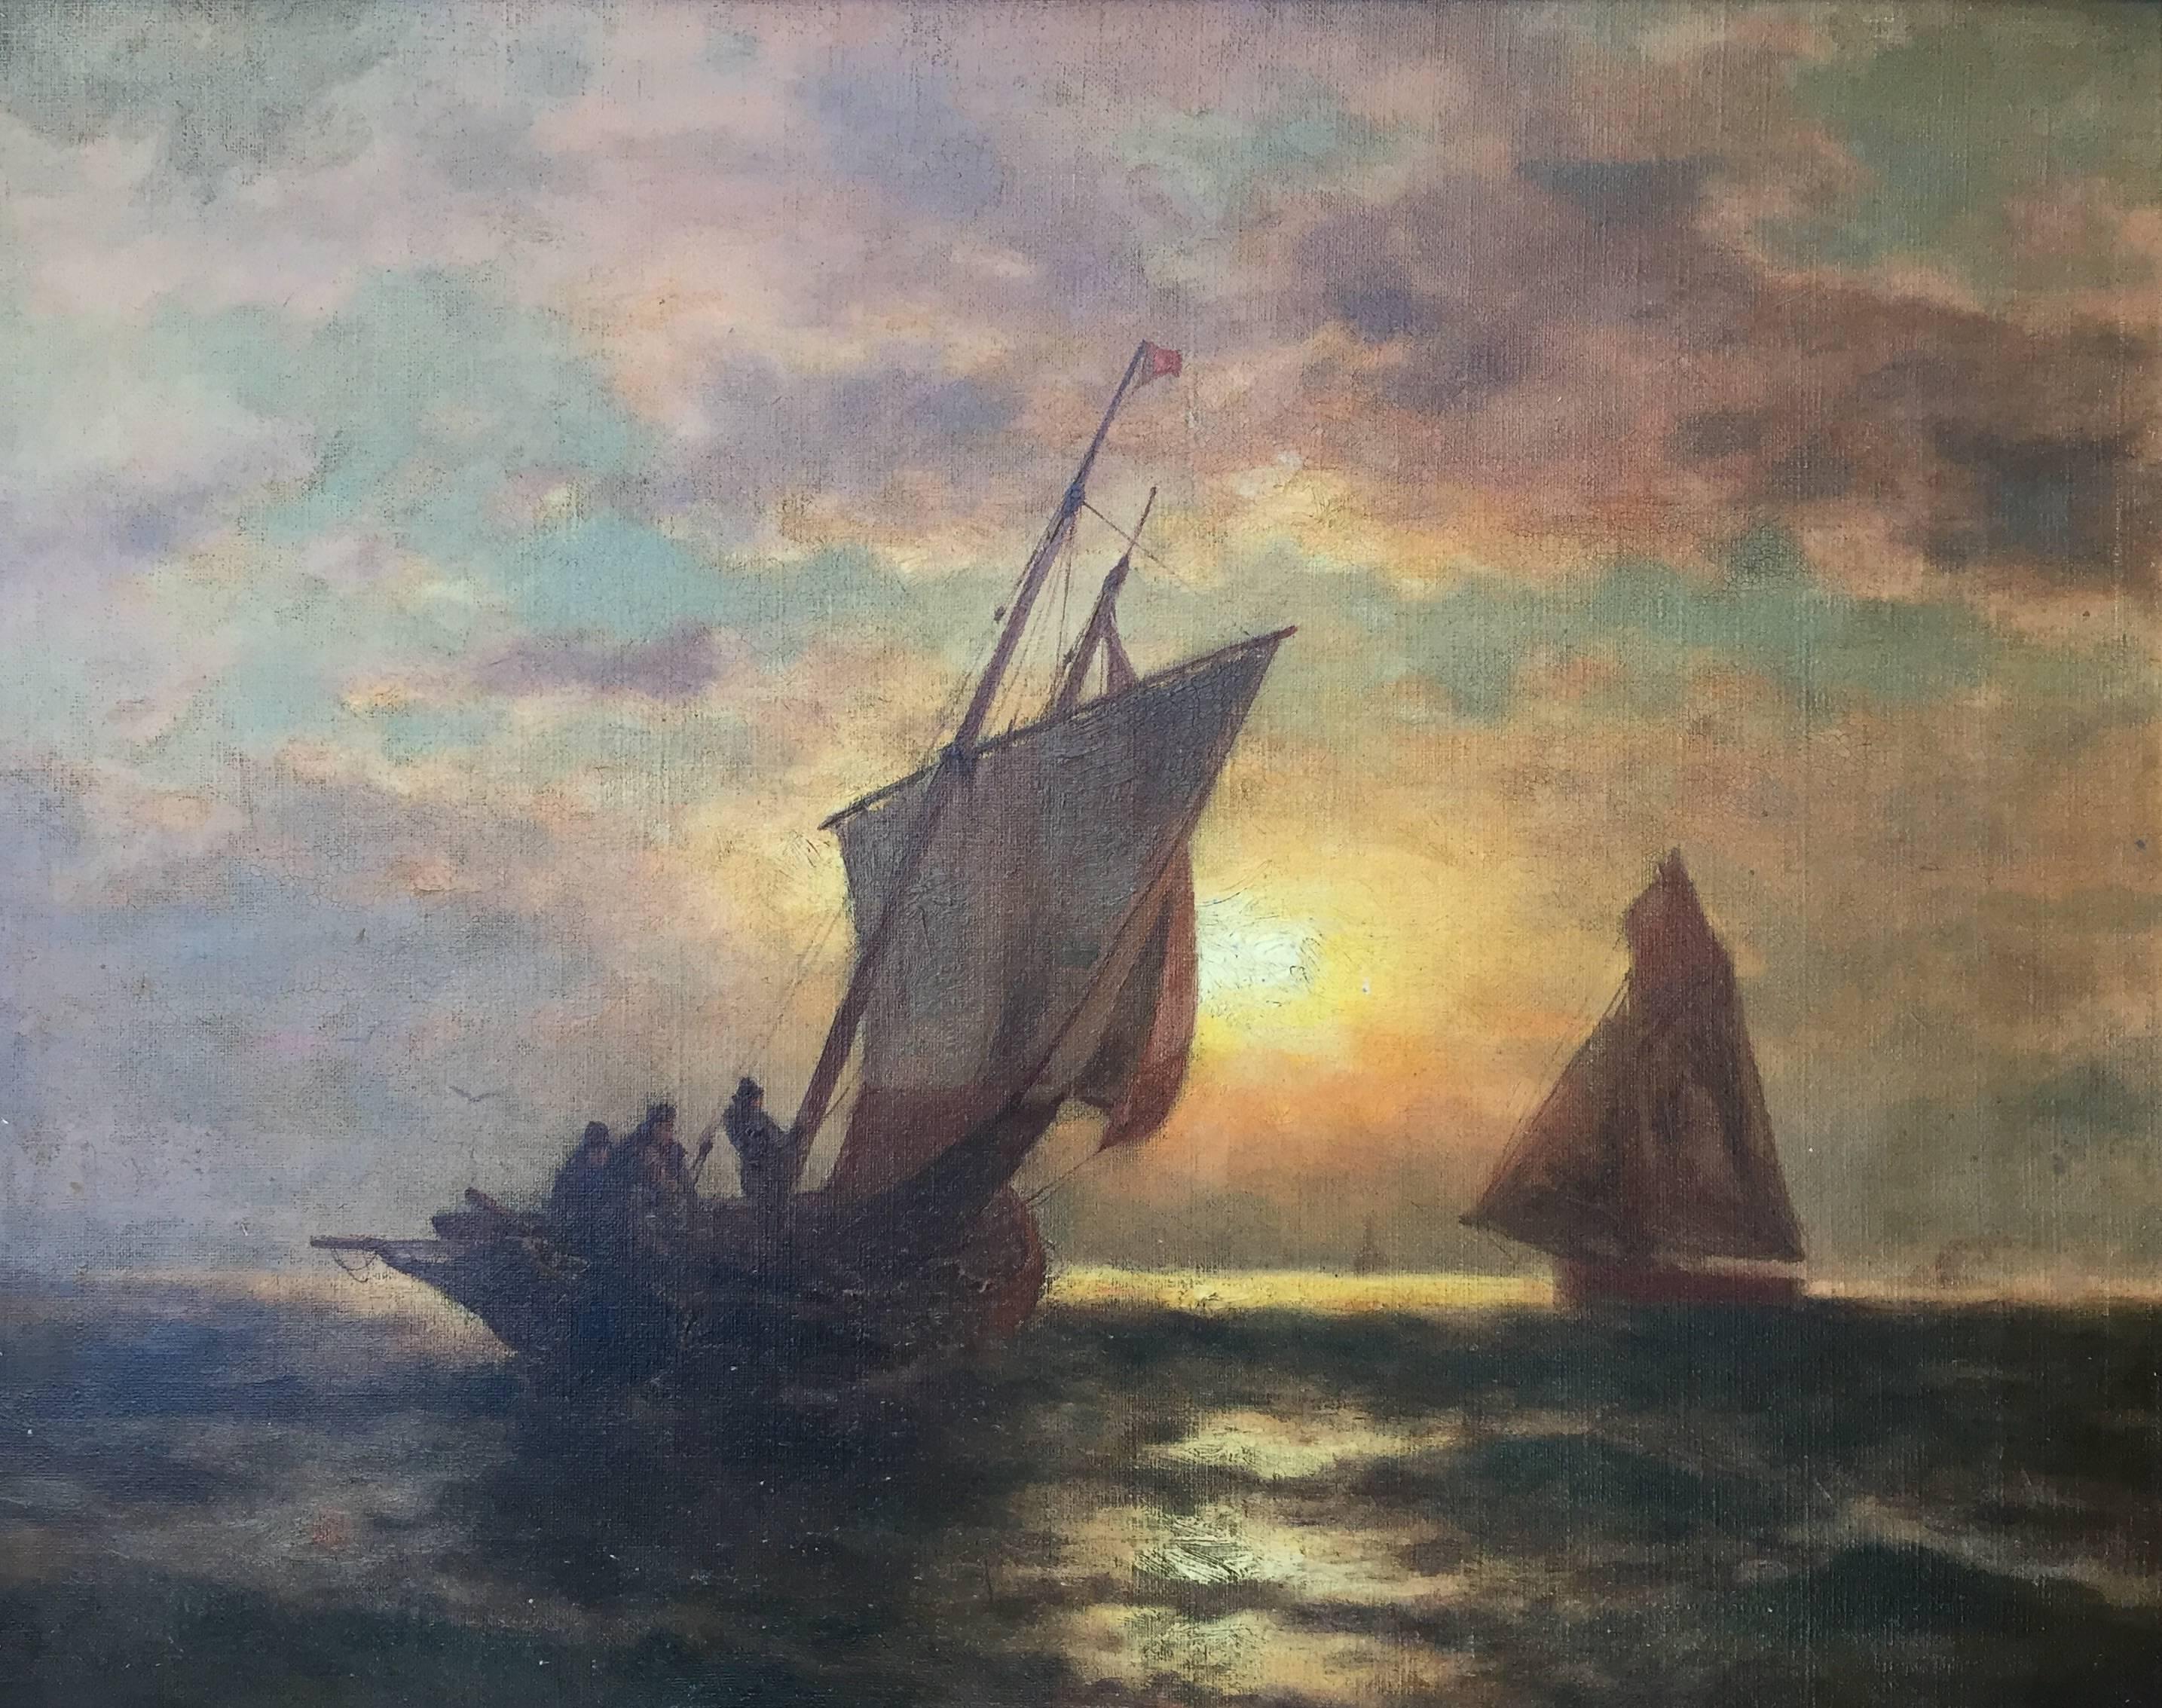 B. Kreutzer Landscape Painting - "Sunset Sail"